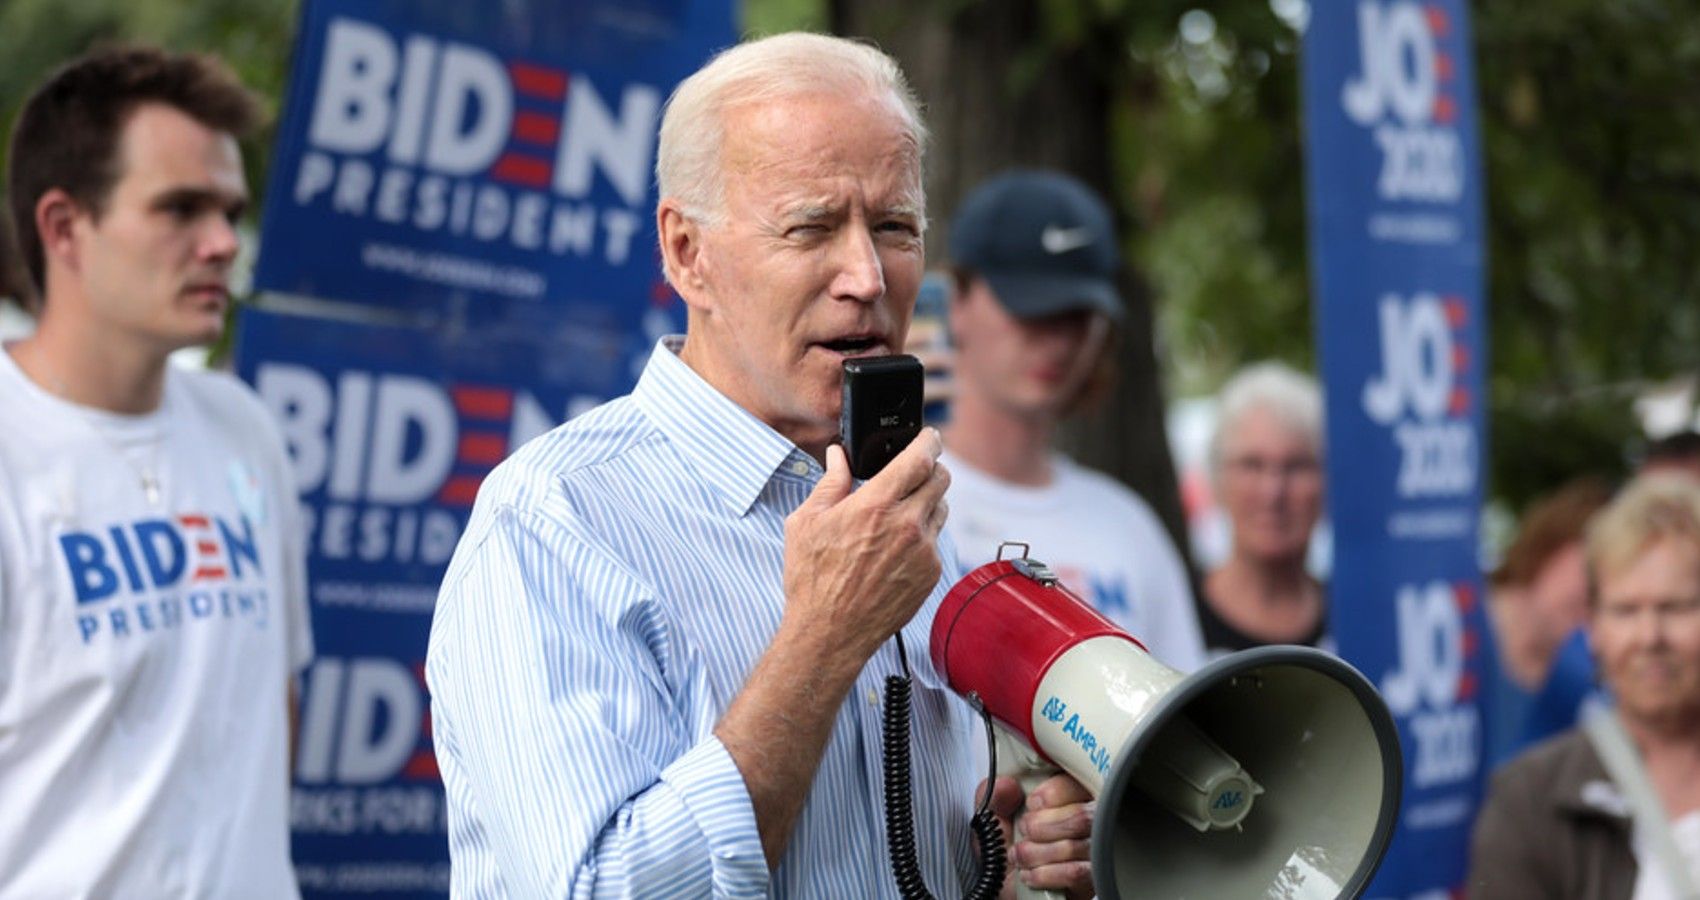 Joe Biden giving a speech with a megaphone